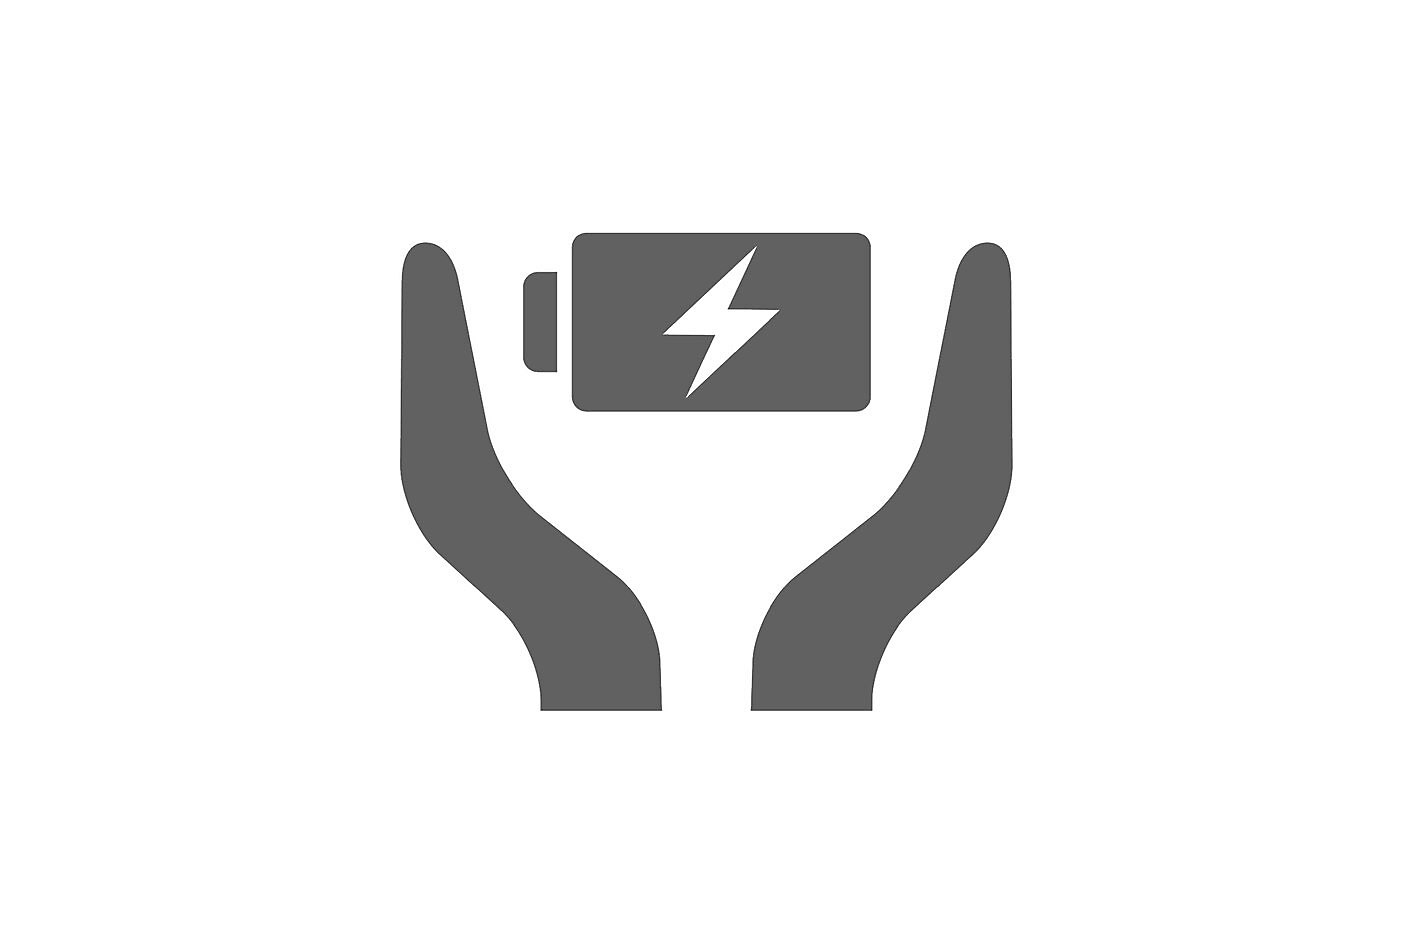 Εικόνα δύο χεριών που περιβάλλουν μια μπαταρία με το σύμβολο του κεραυνού